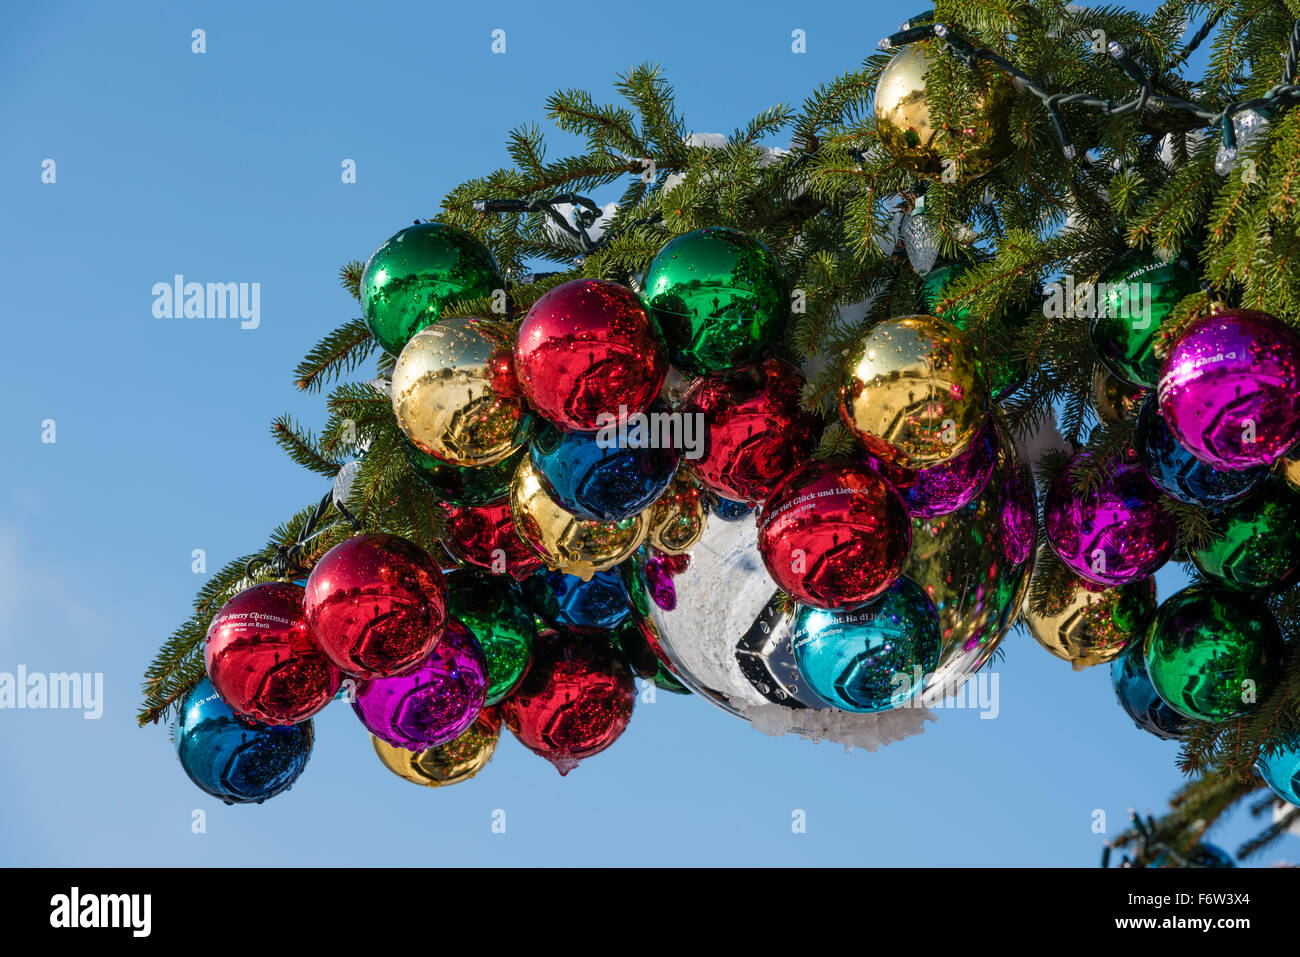 Coloratissima palla di Natale ornamenti su un gigantesco albero di Natale sul Saechselaeutenplatz, al di fuori dell Opernhaus di Zurigo, Svizzera. Foto Stock